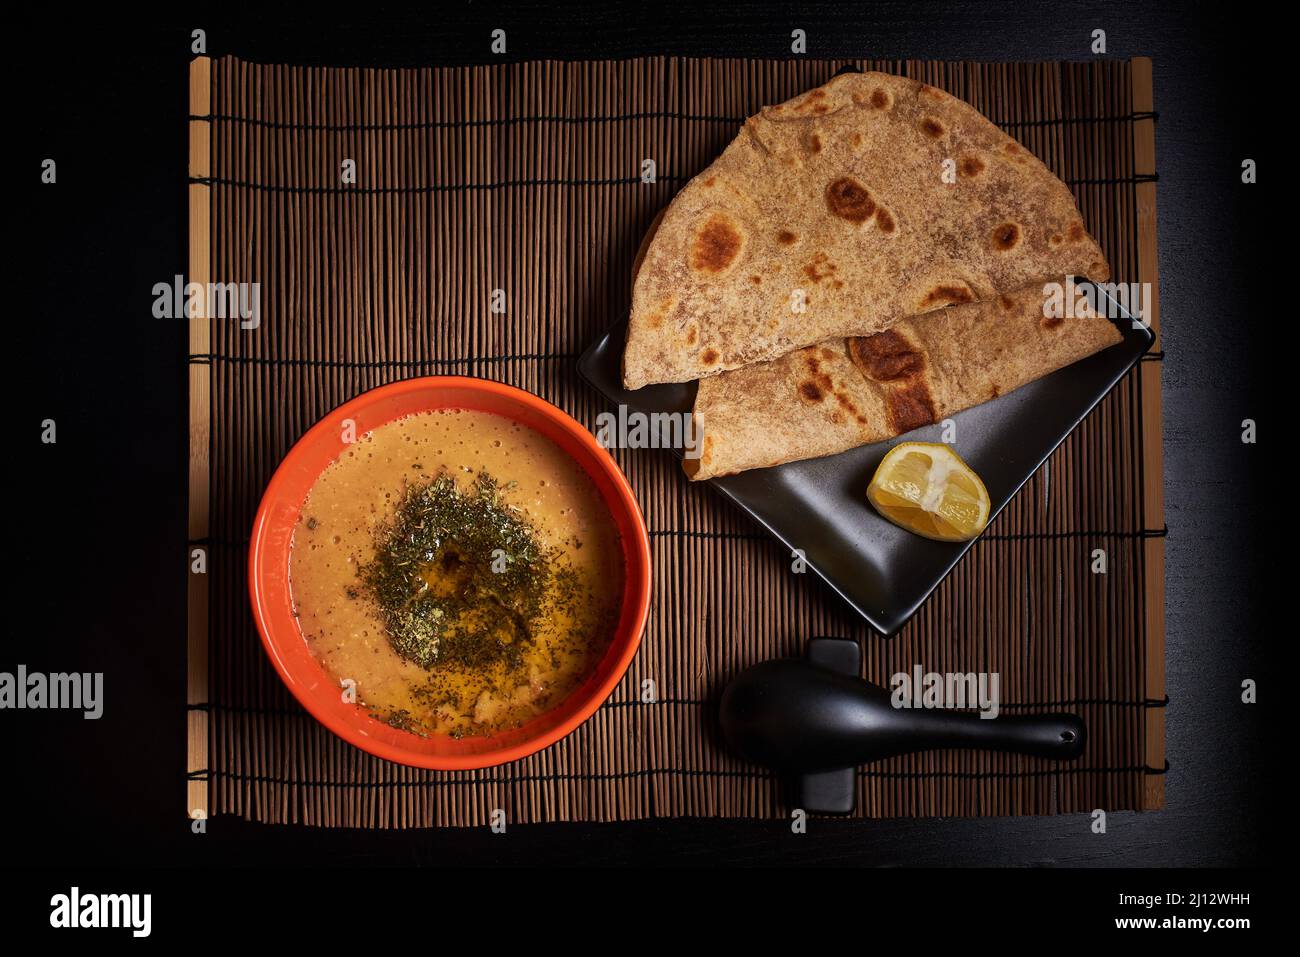 Photo de la nourriture, soupe de lentilles dans un bol avec deux tranches de pain de chapati, plat végétalien de menue turque orientale, vue de dessus de la nourriture végétarienne Banque D'Images